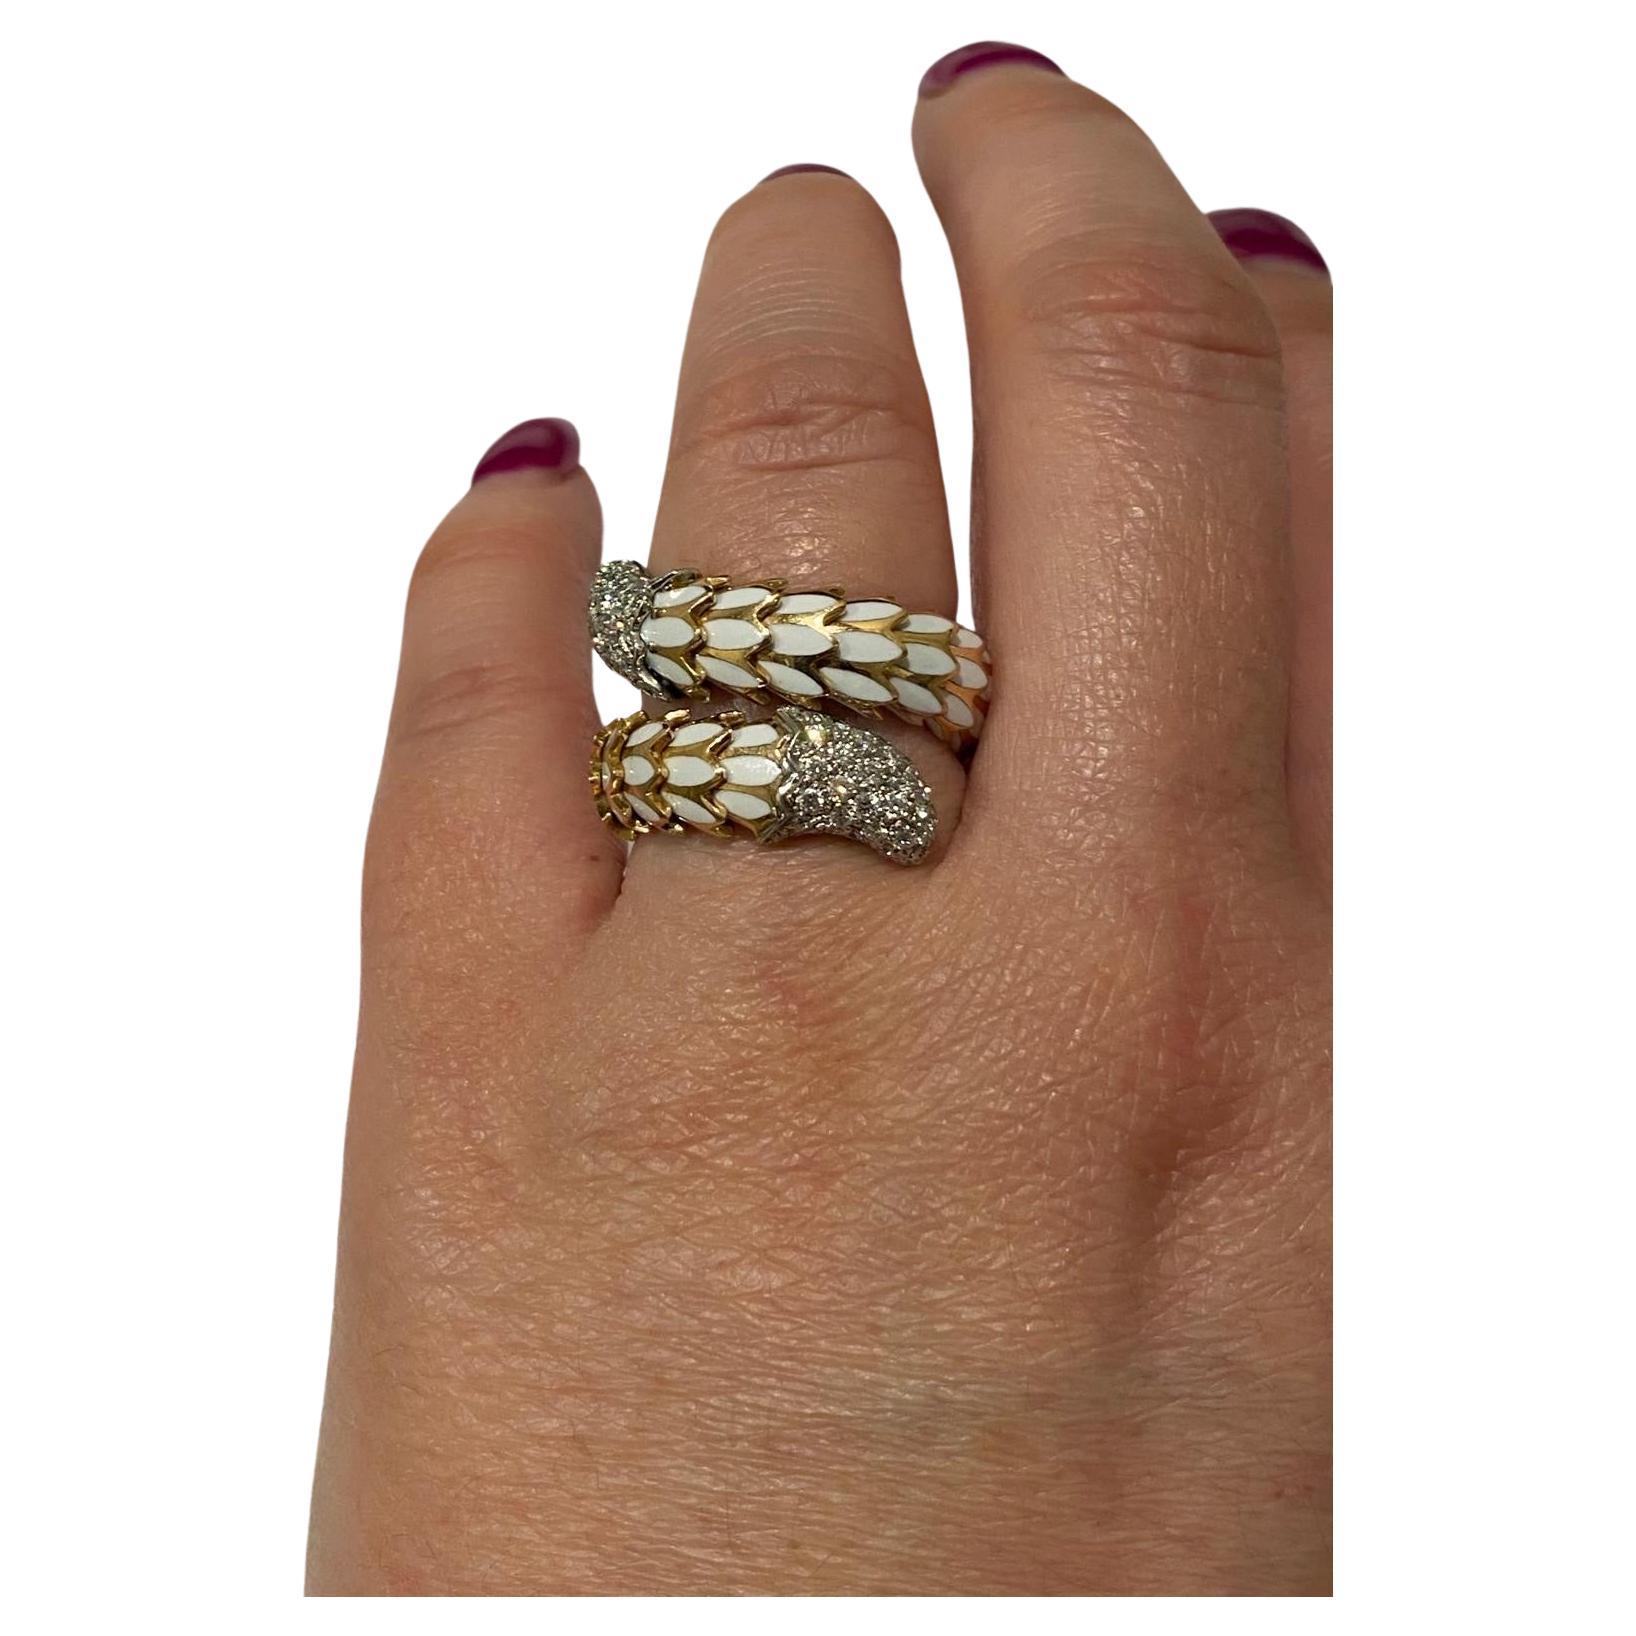 Auffallend Designer Robert Coin Diamant und weißem Emaille Schlange Schlange Skala Ring. Handgefertigt aus zweifarbigem 18 Karat Rosé- und Weißgold mit diamantbesetztem Kopf und Diamanten. Dieses Stück hat einen wundervollen, altmodischen Charme.